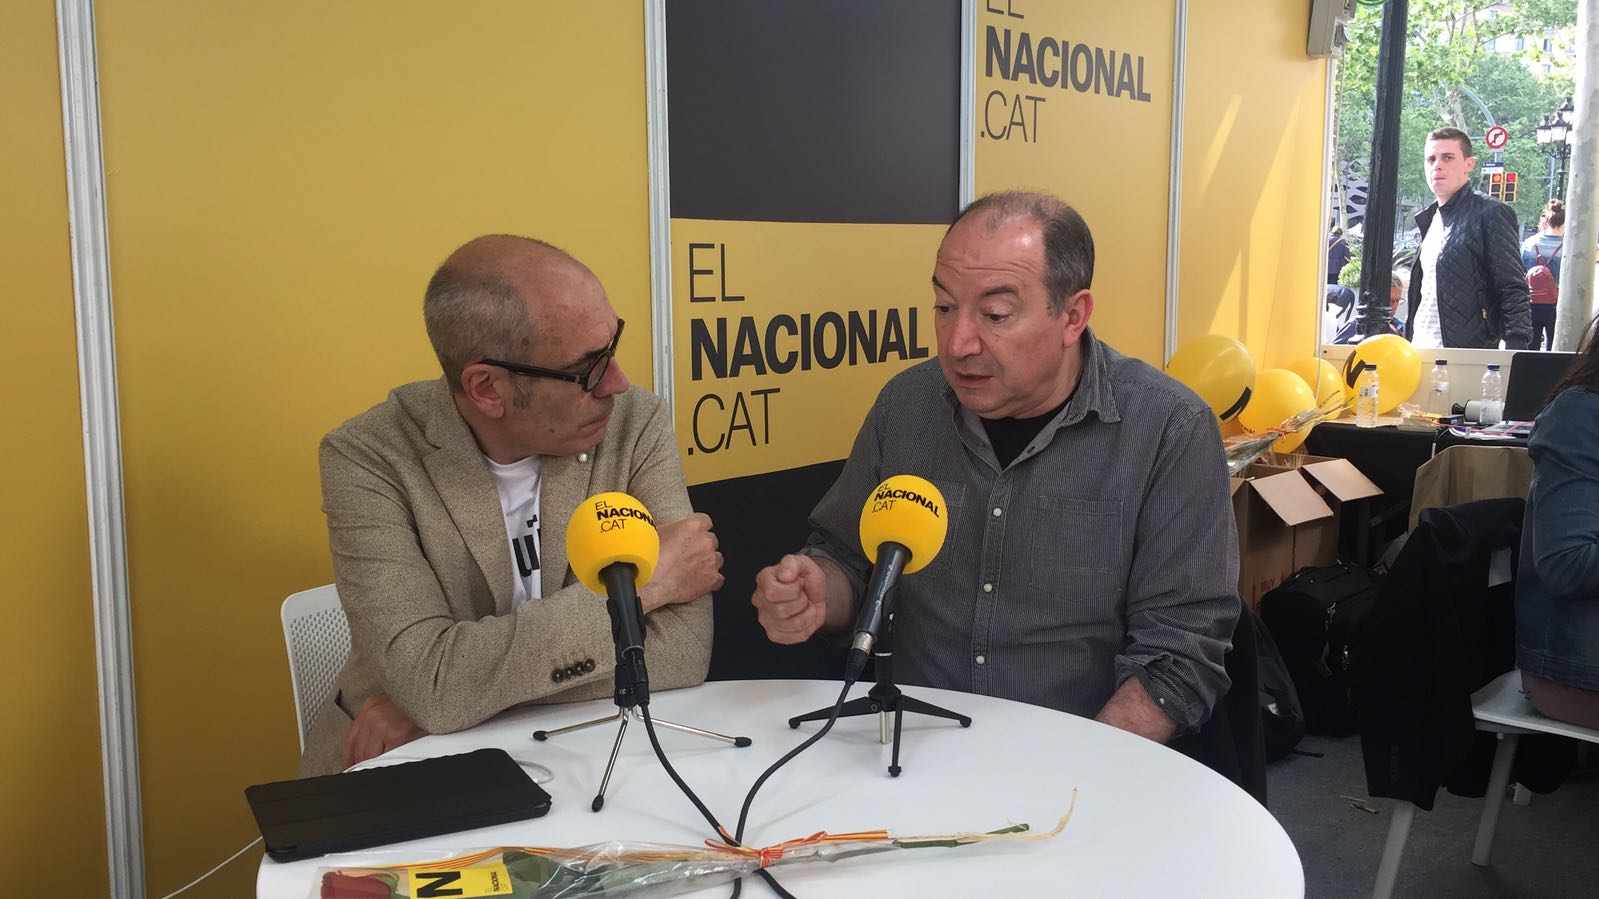 Vicent Sanchis: "Quins programes ha vist Rajoy de TV3?"